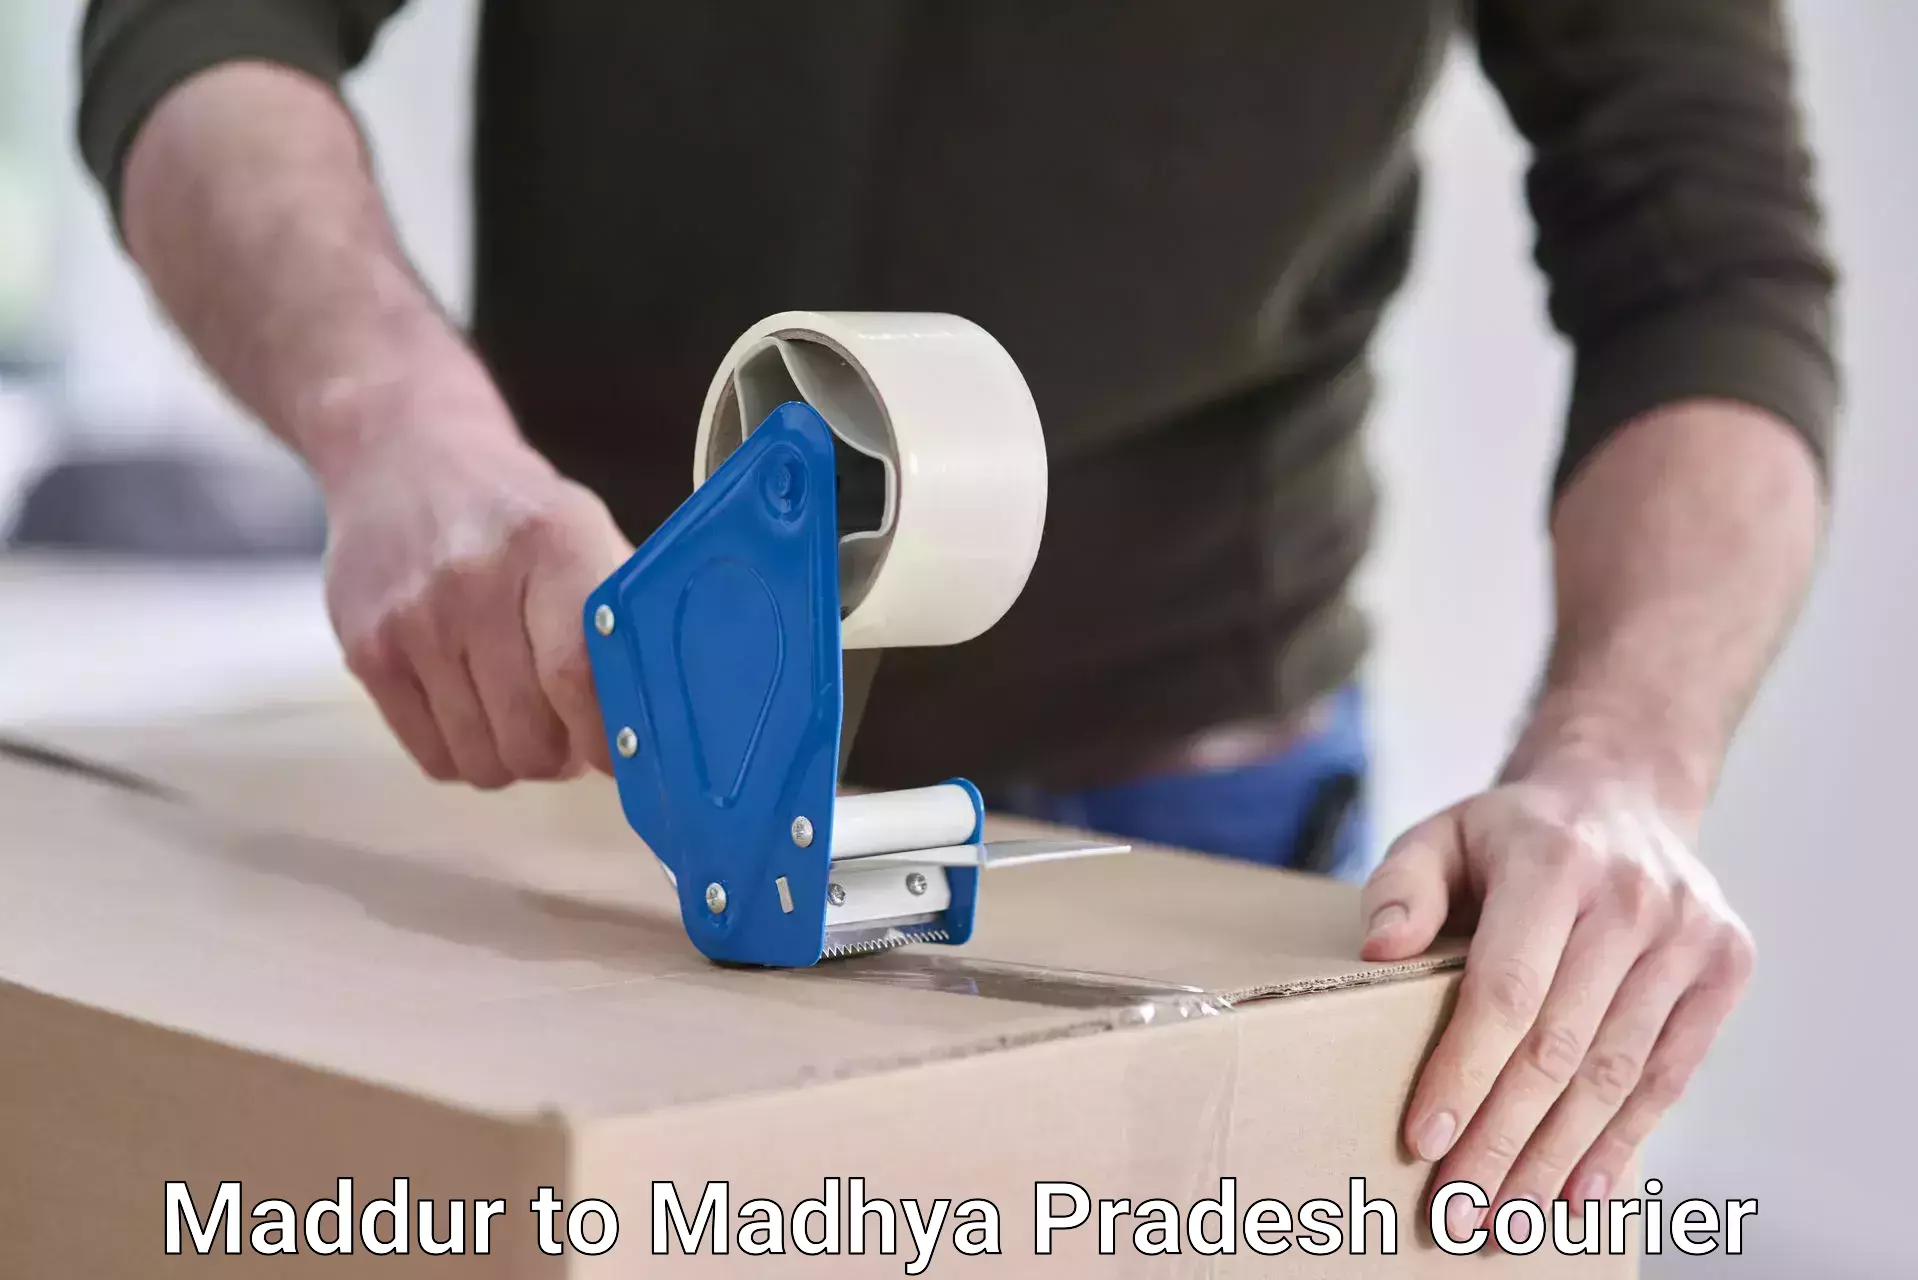 Cross-border shipping Maddur to Madhya Pradesh